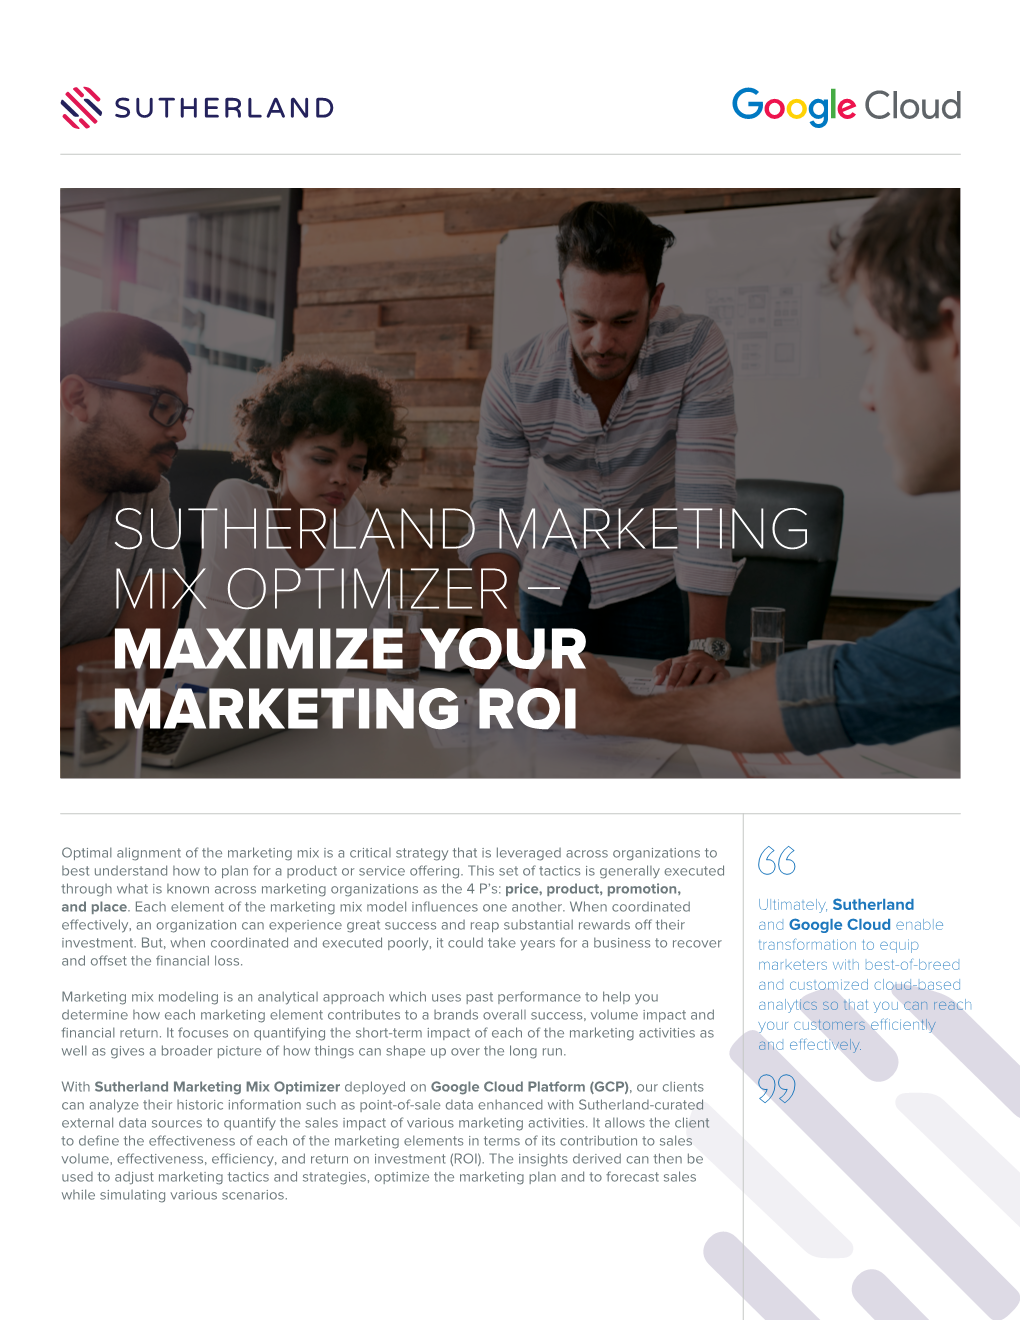 Sutherland Marketing Mix Optimizer – Maximize Your Marketing Roi